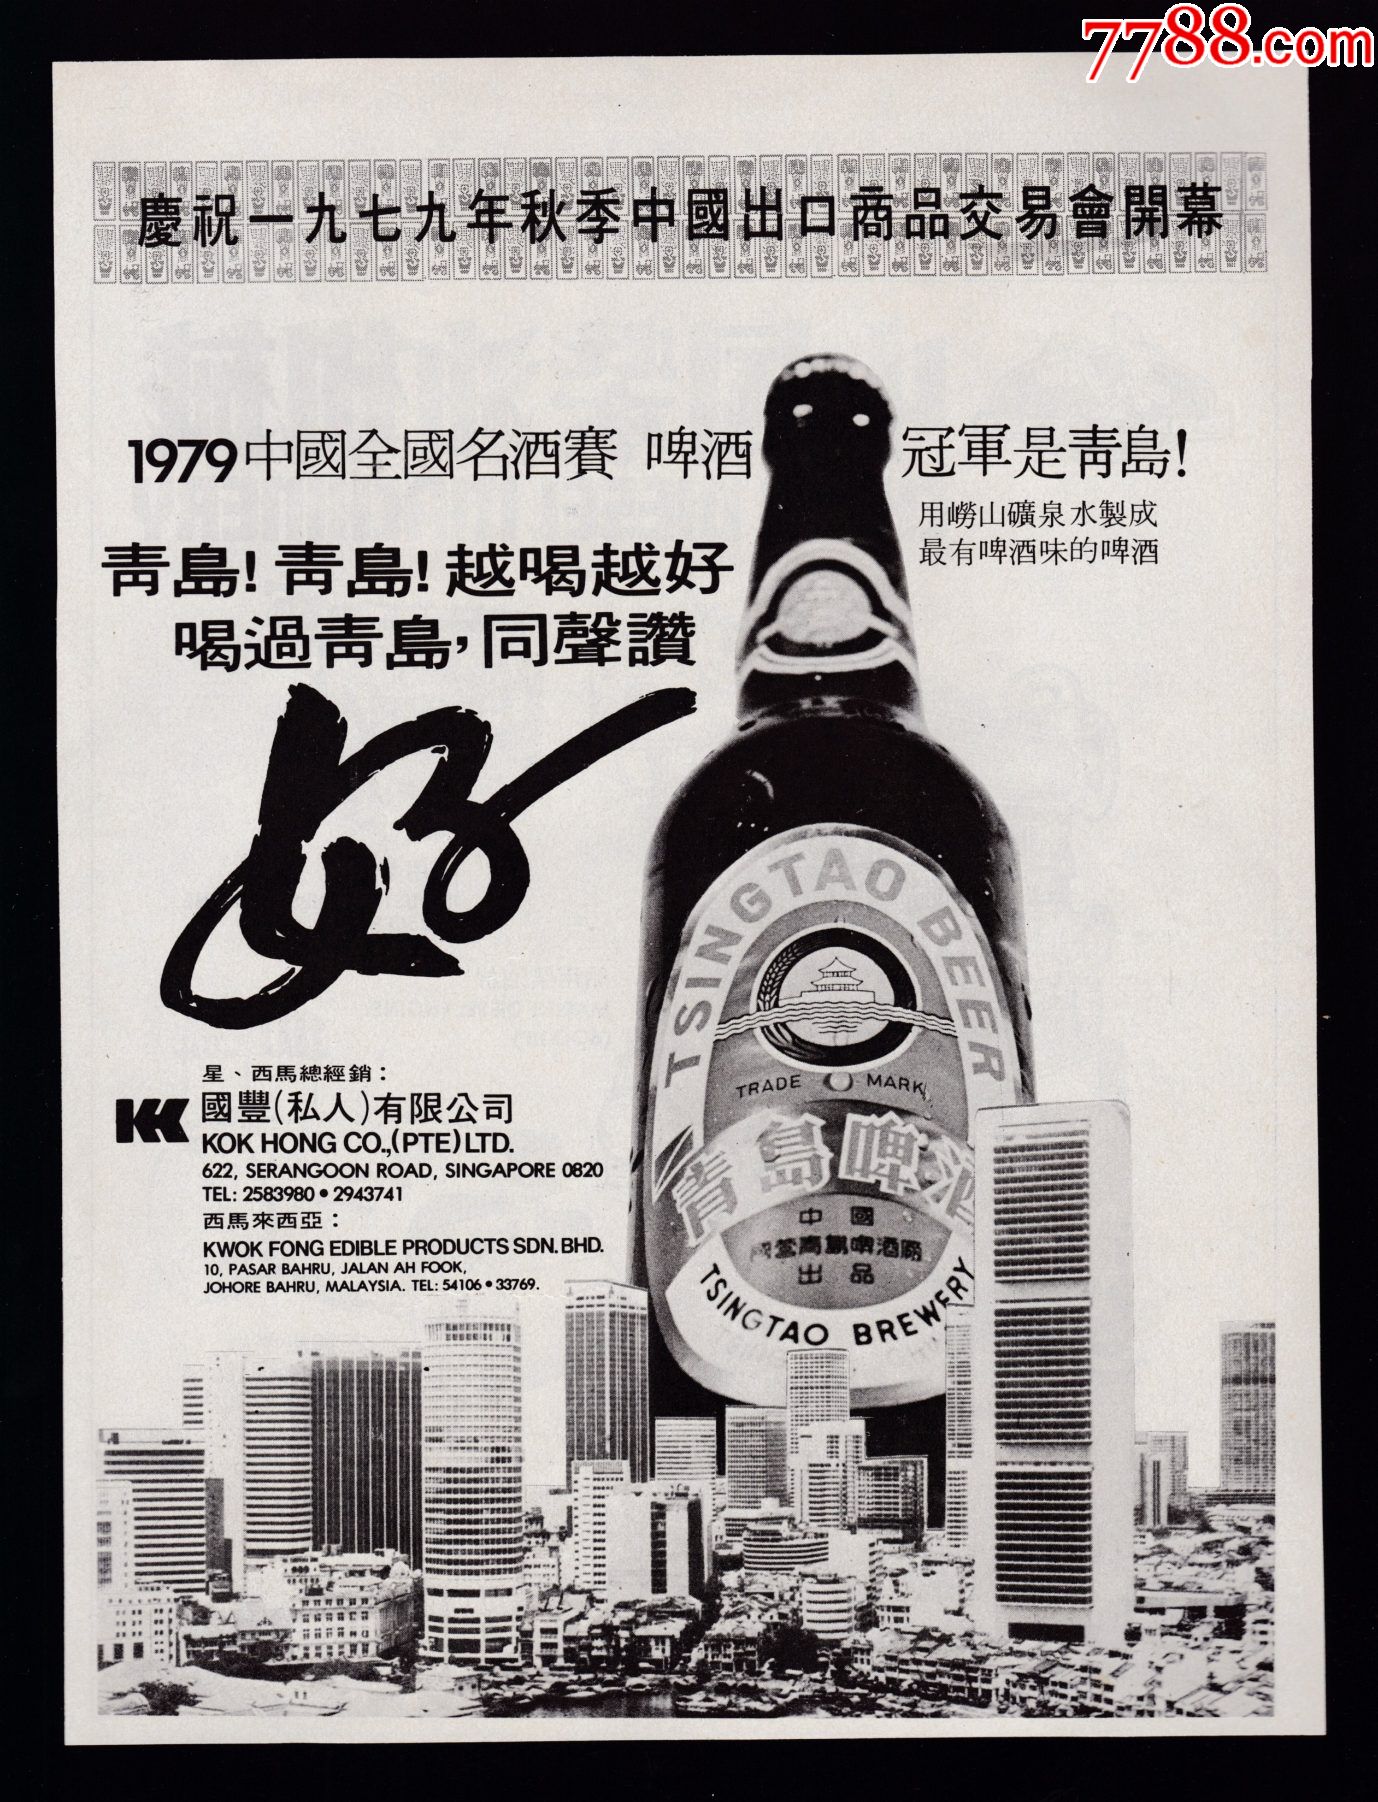 青岛啤酒广告